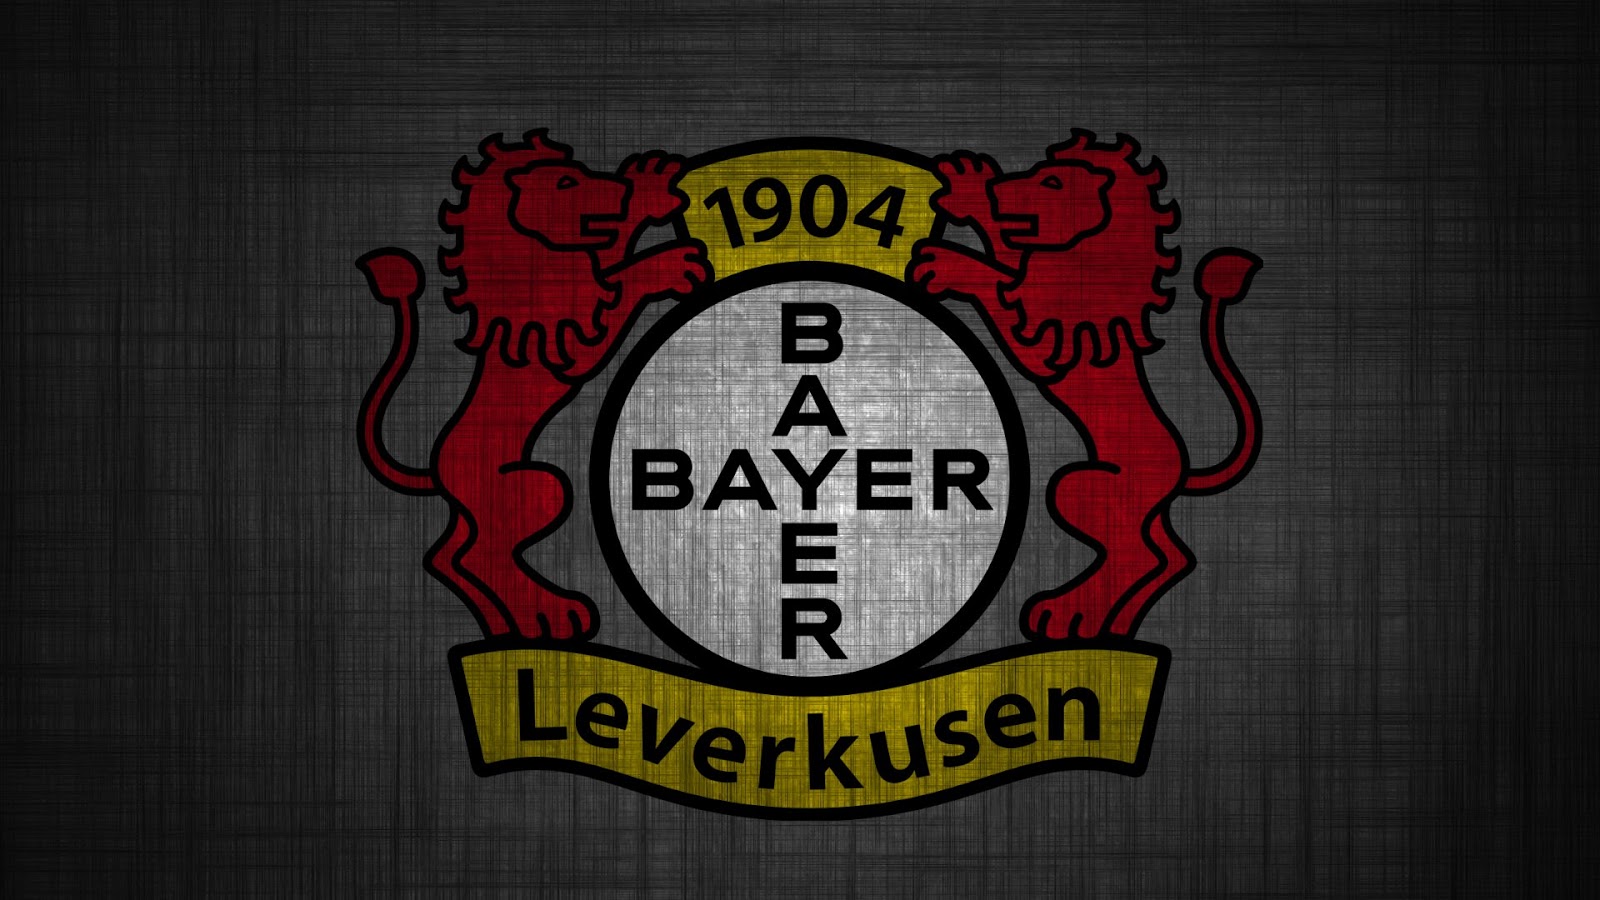 Bayer04 Leverkusen